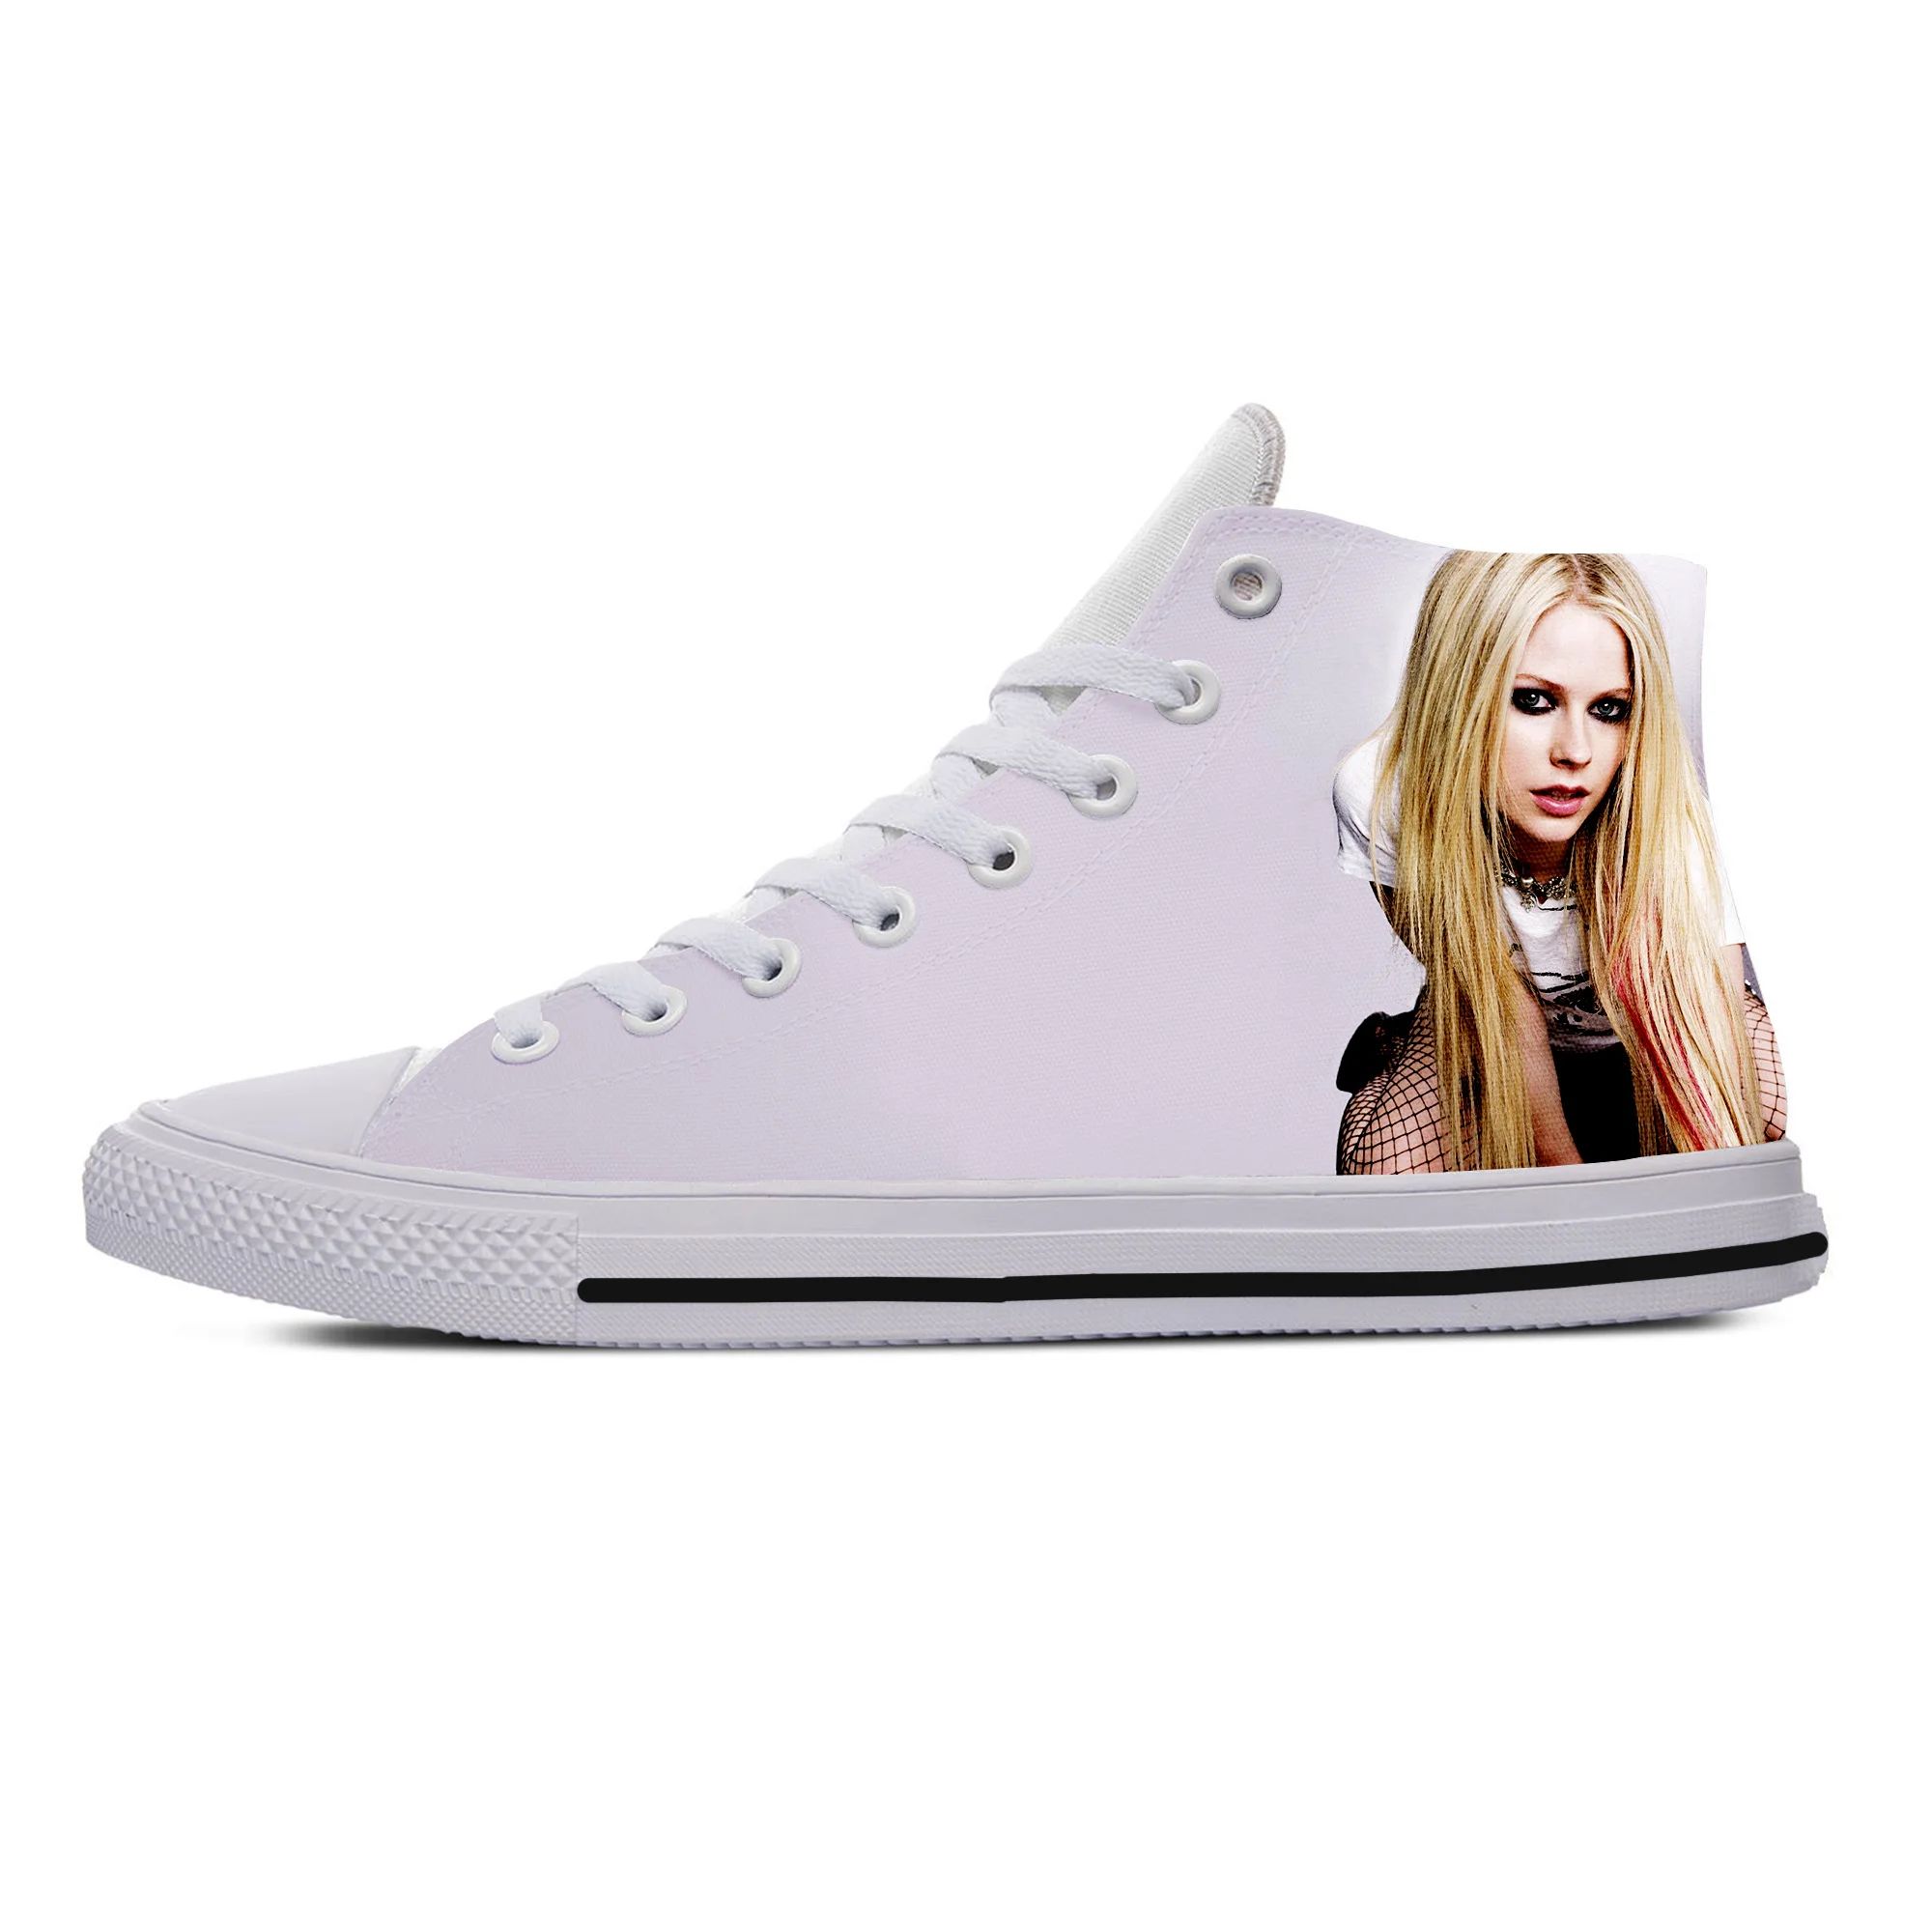 Couleur: Avril Lavigne 7Shoe Taille: 8.5